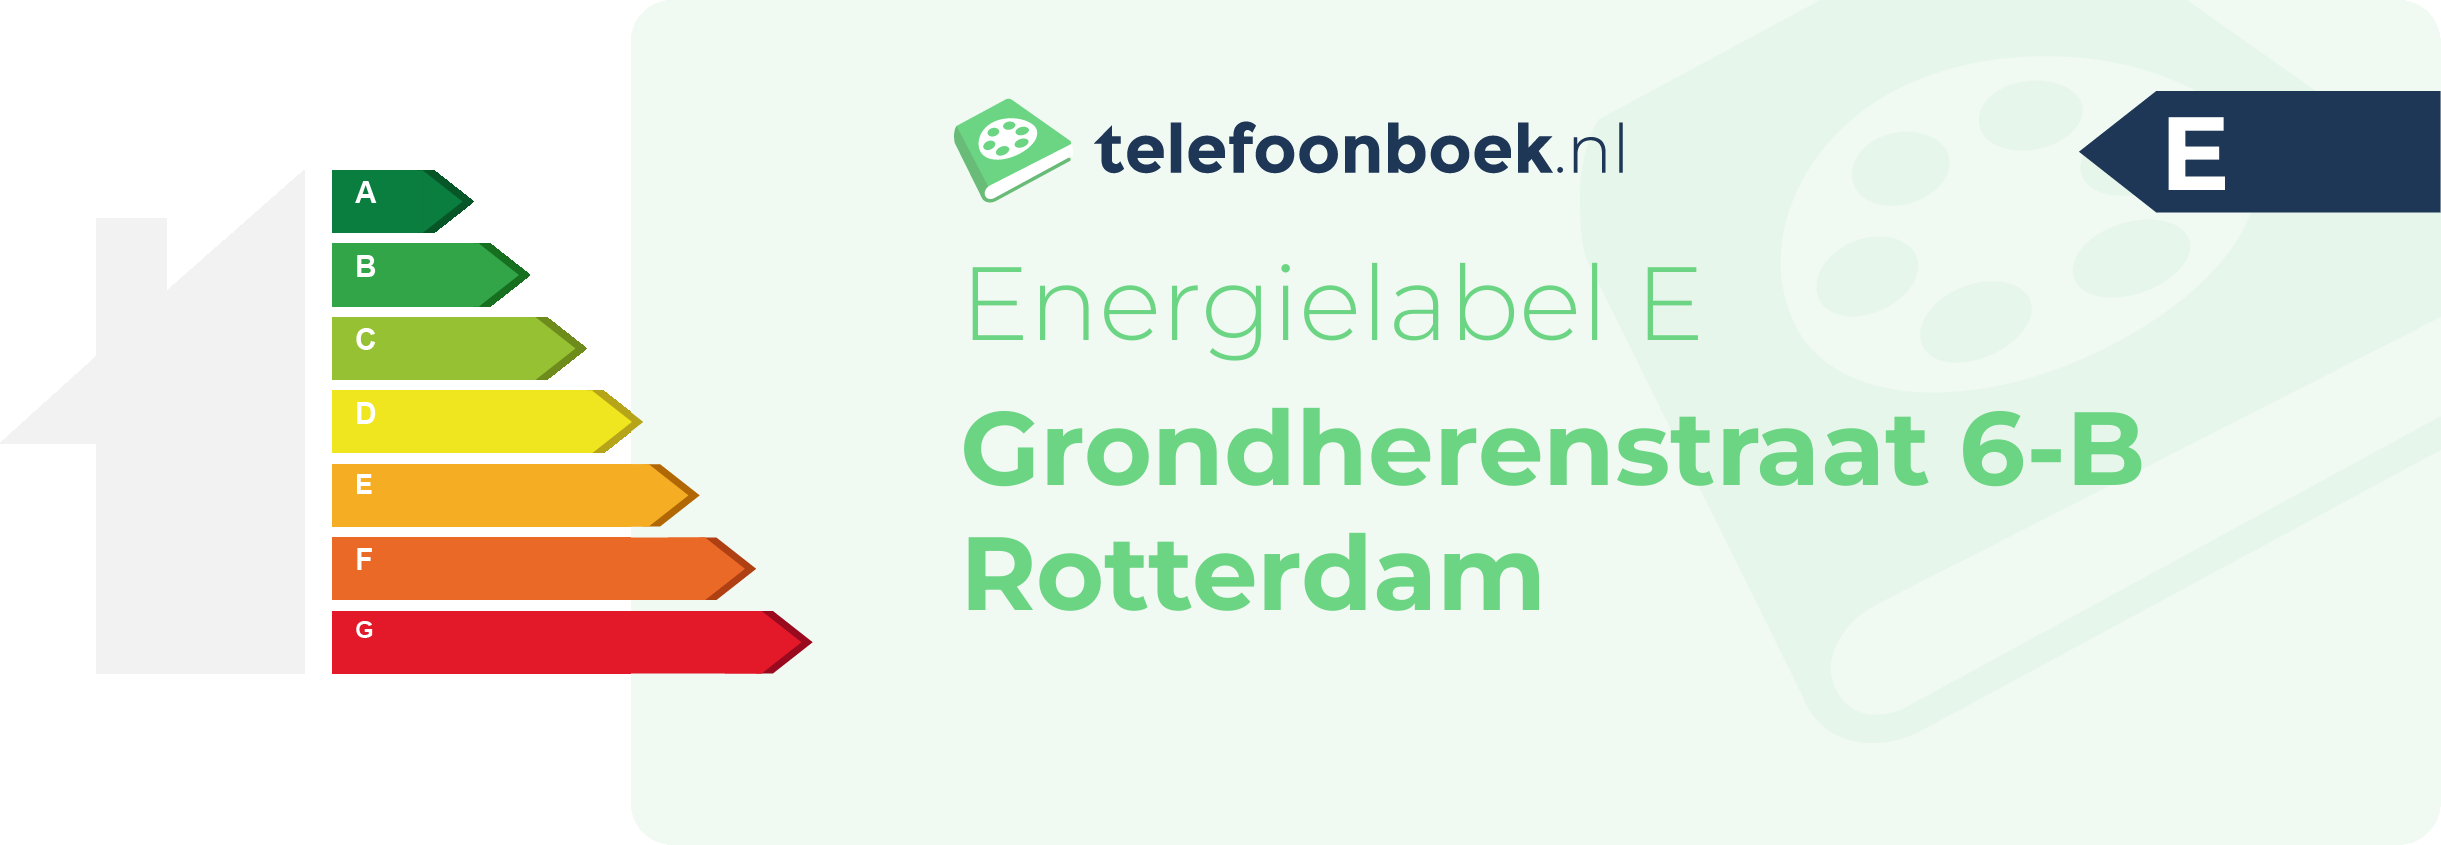 Energielabel Grondherenstraat 6-B Rotterdam